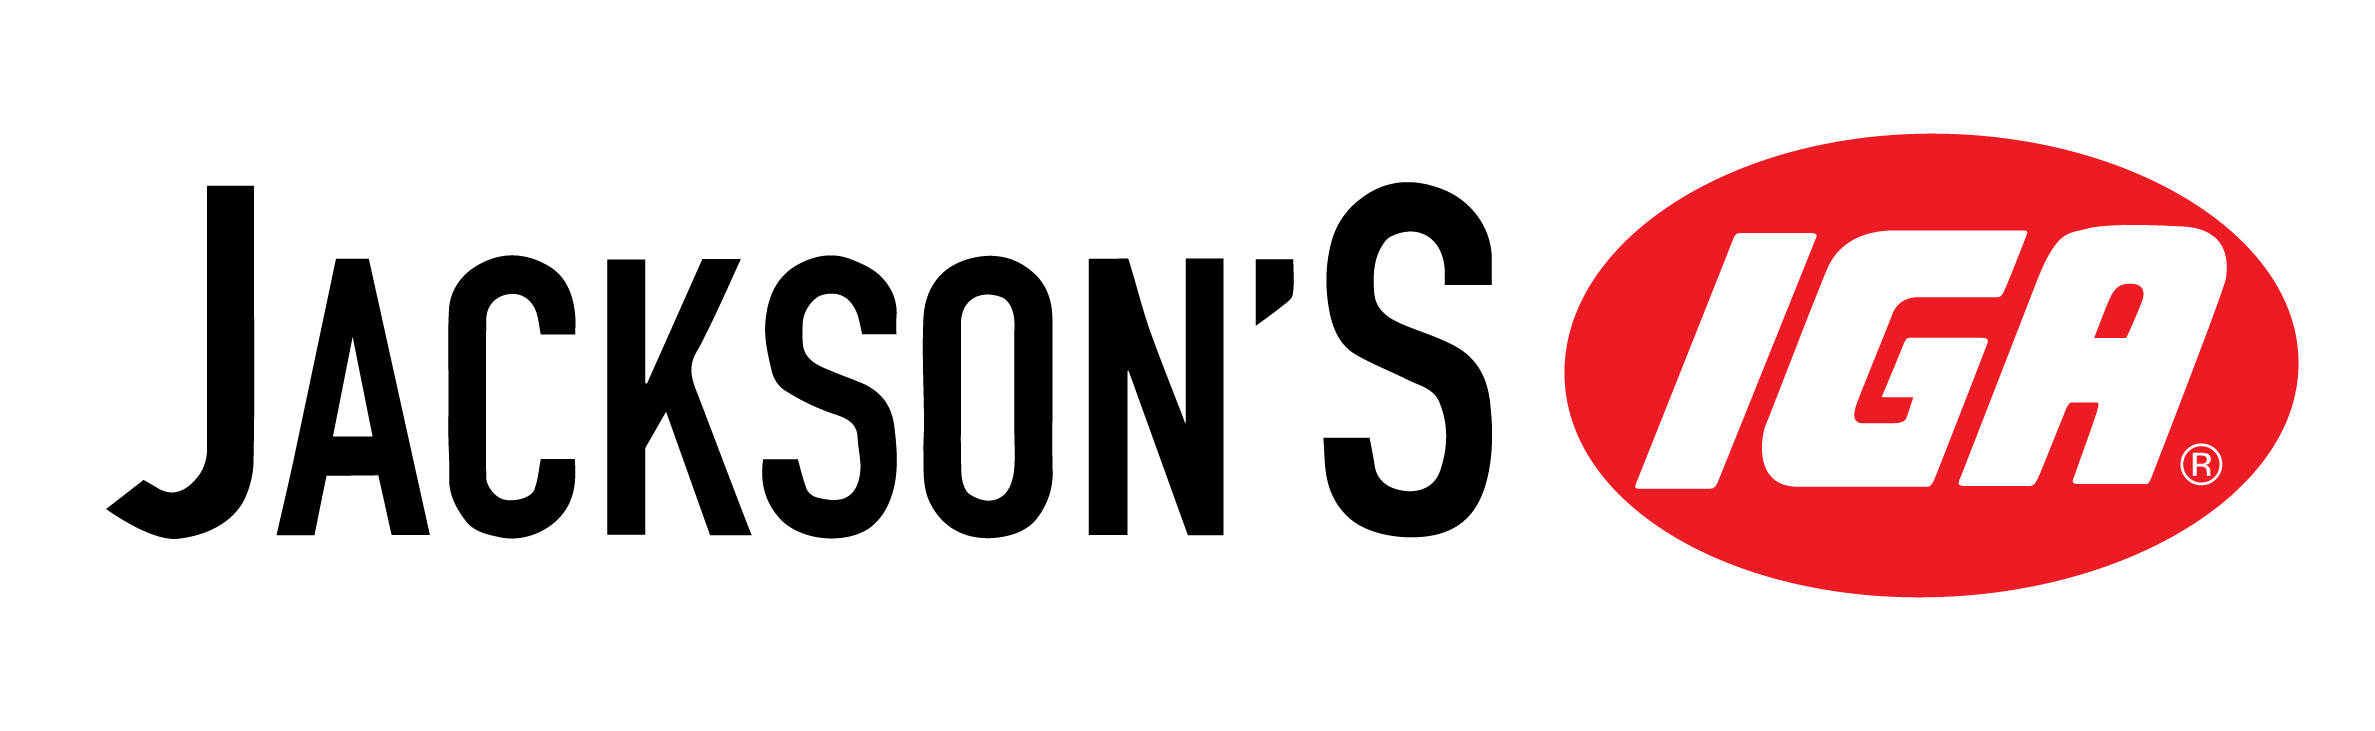 A theme logo of Jackson's IGA